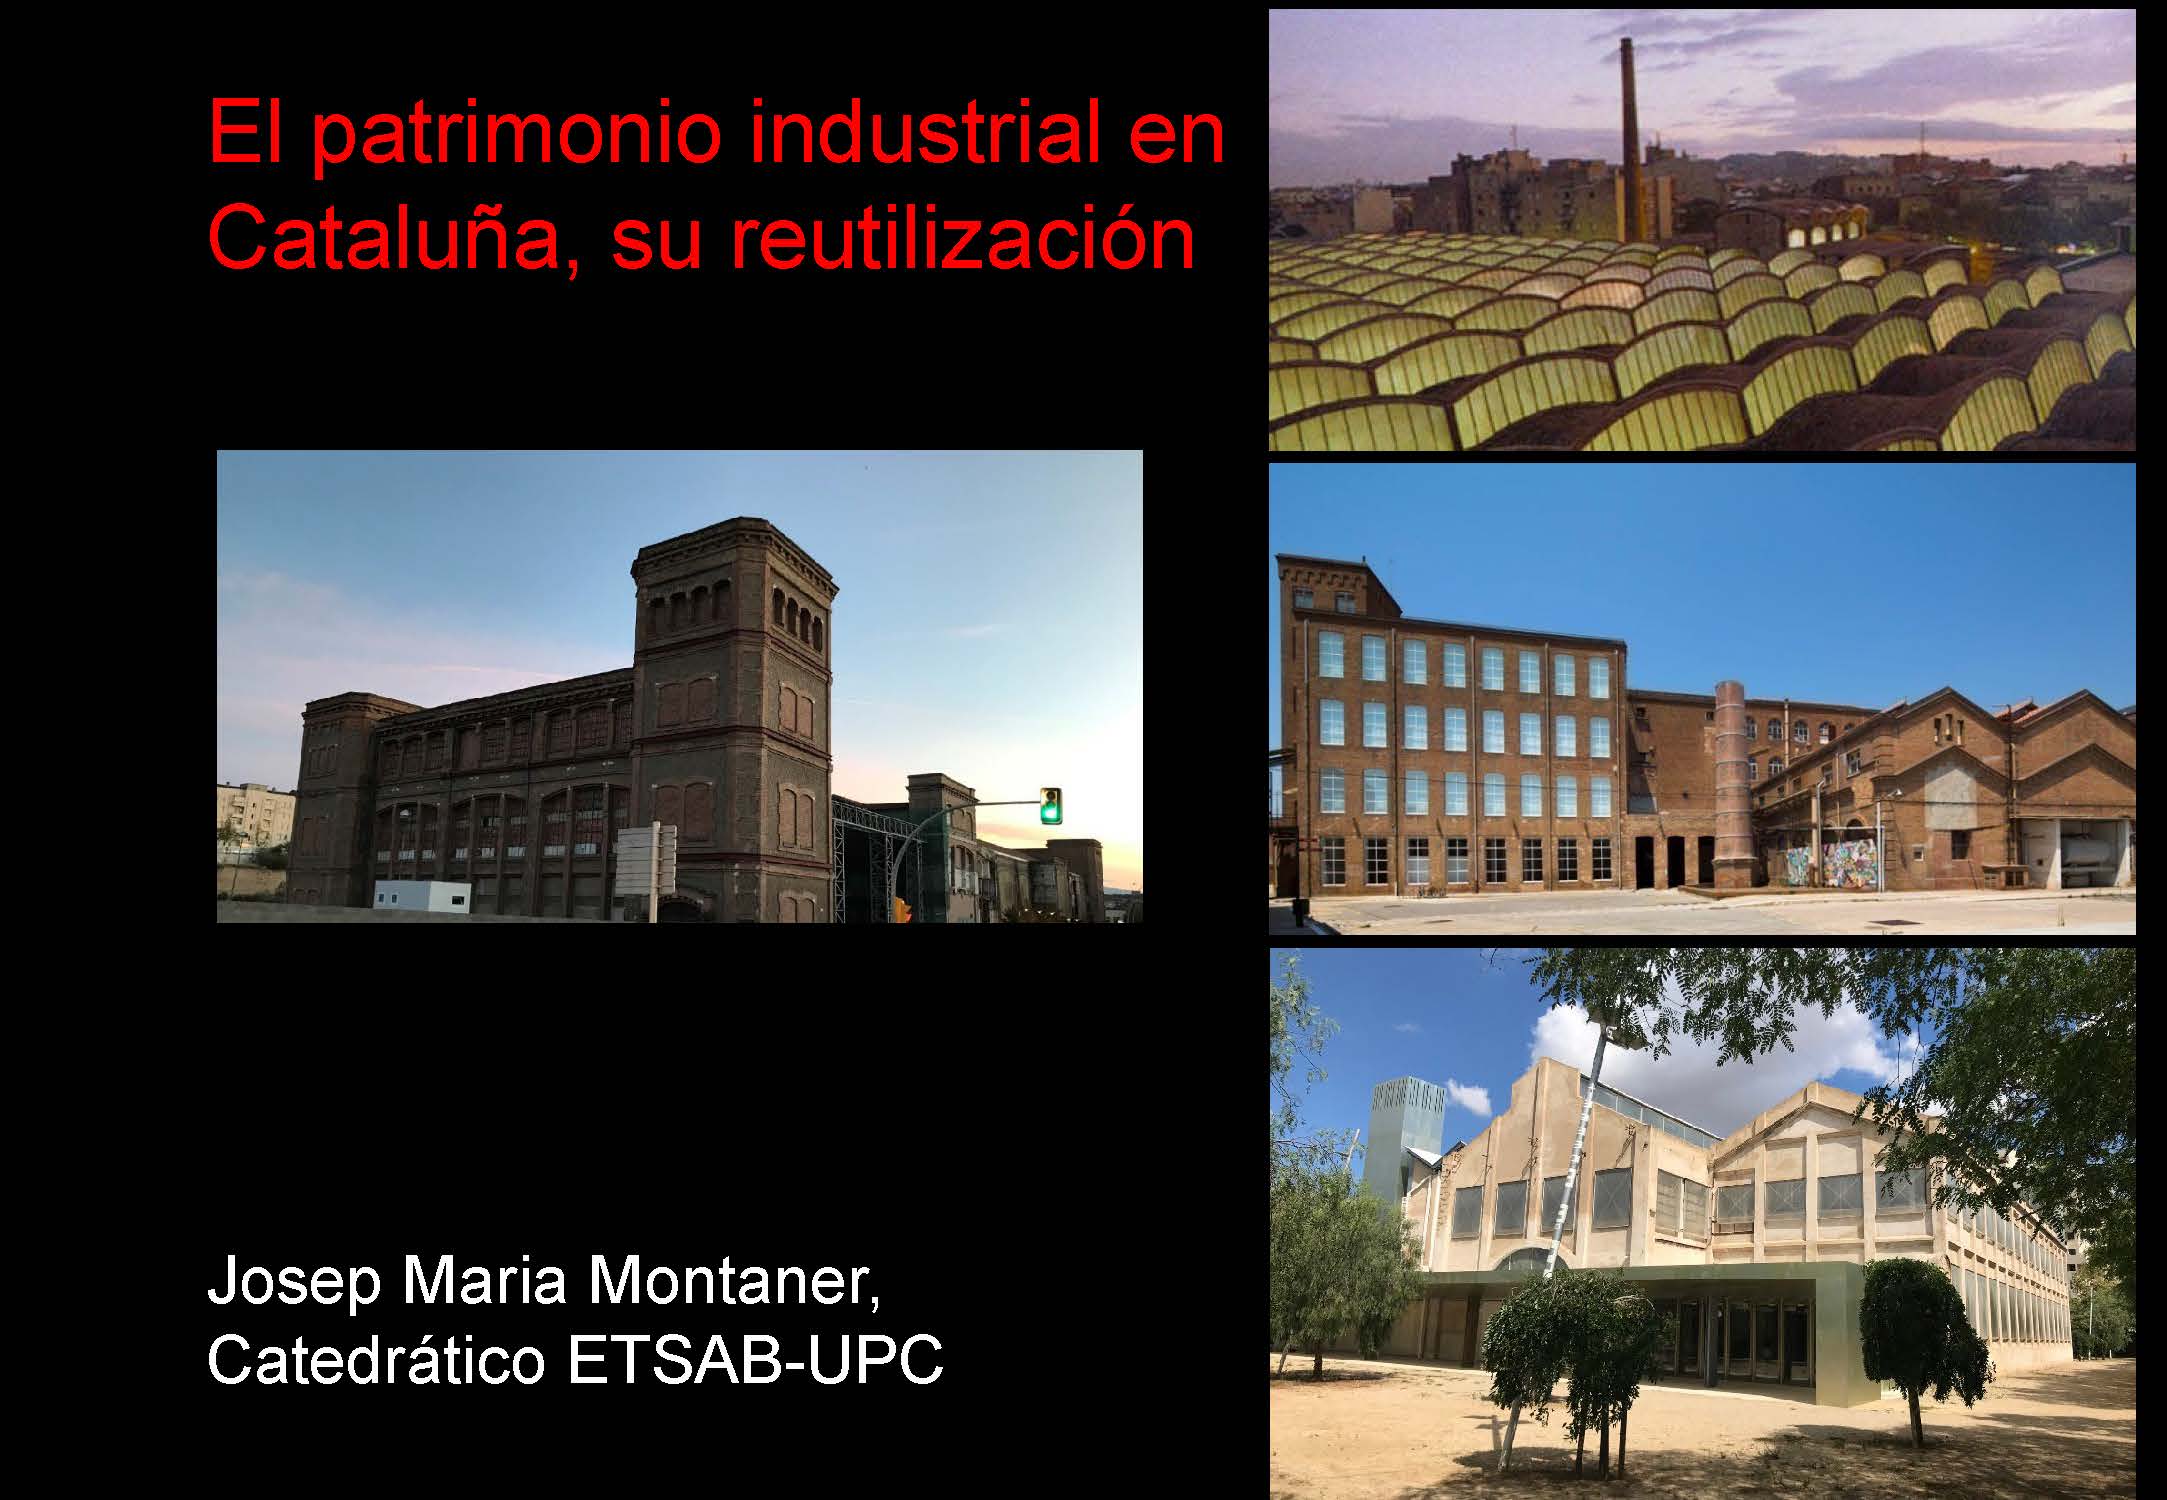 El Patrimonio industrial en Cataluña, su reutilización